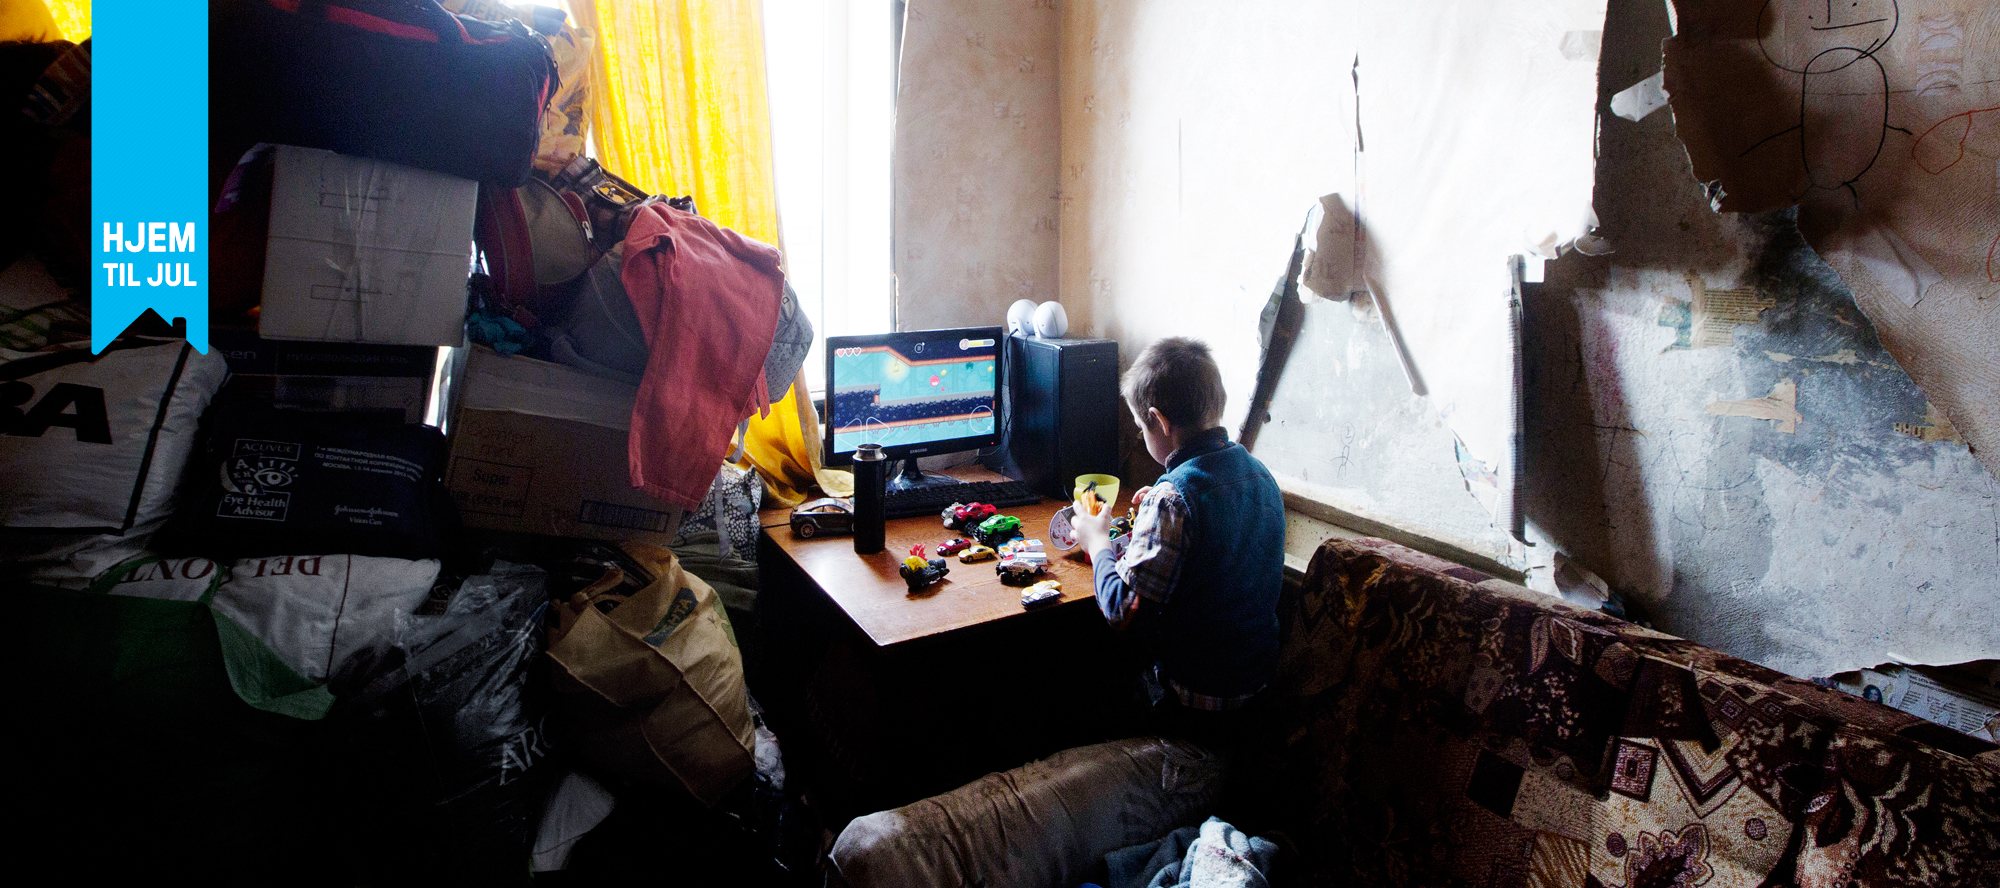 På dette lille rommet har Andrej (5) bodd sammen med moren, bestemoren og tre søsken. Foto. Nina Ruud